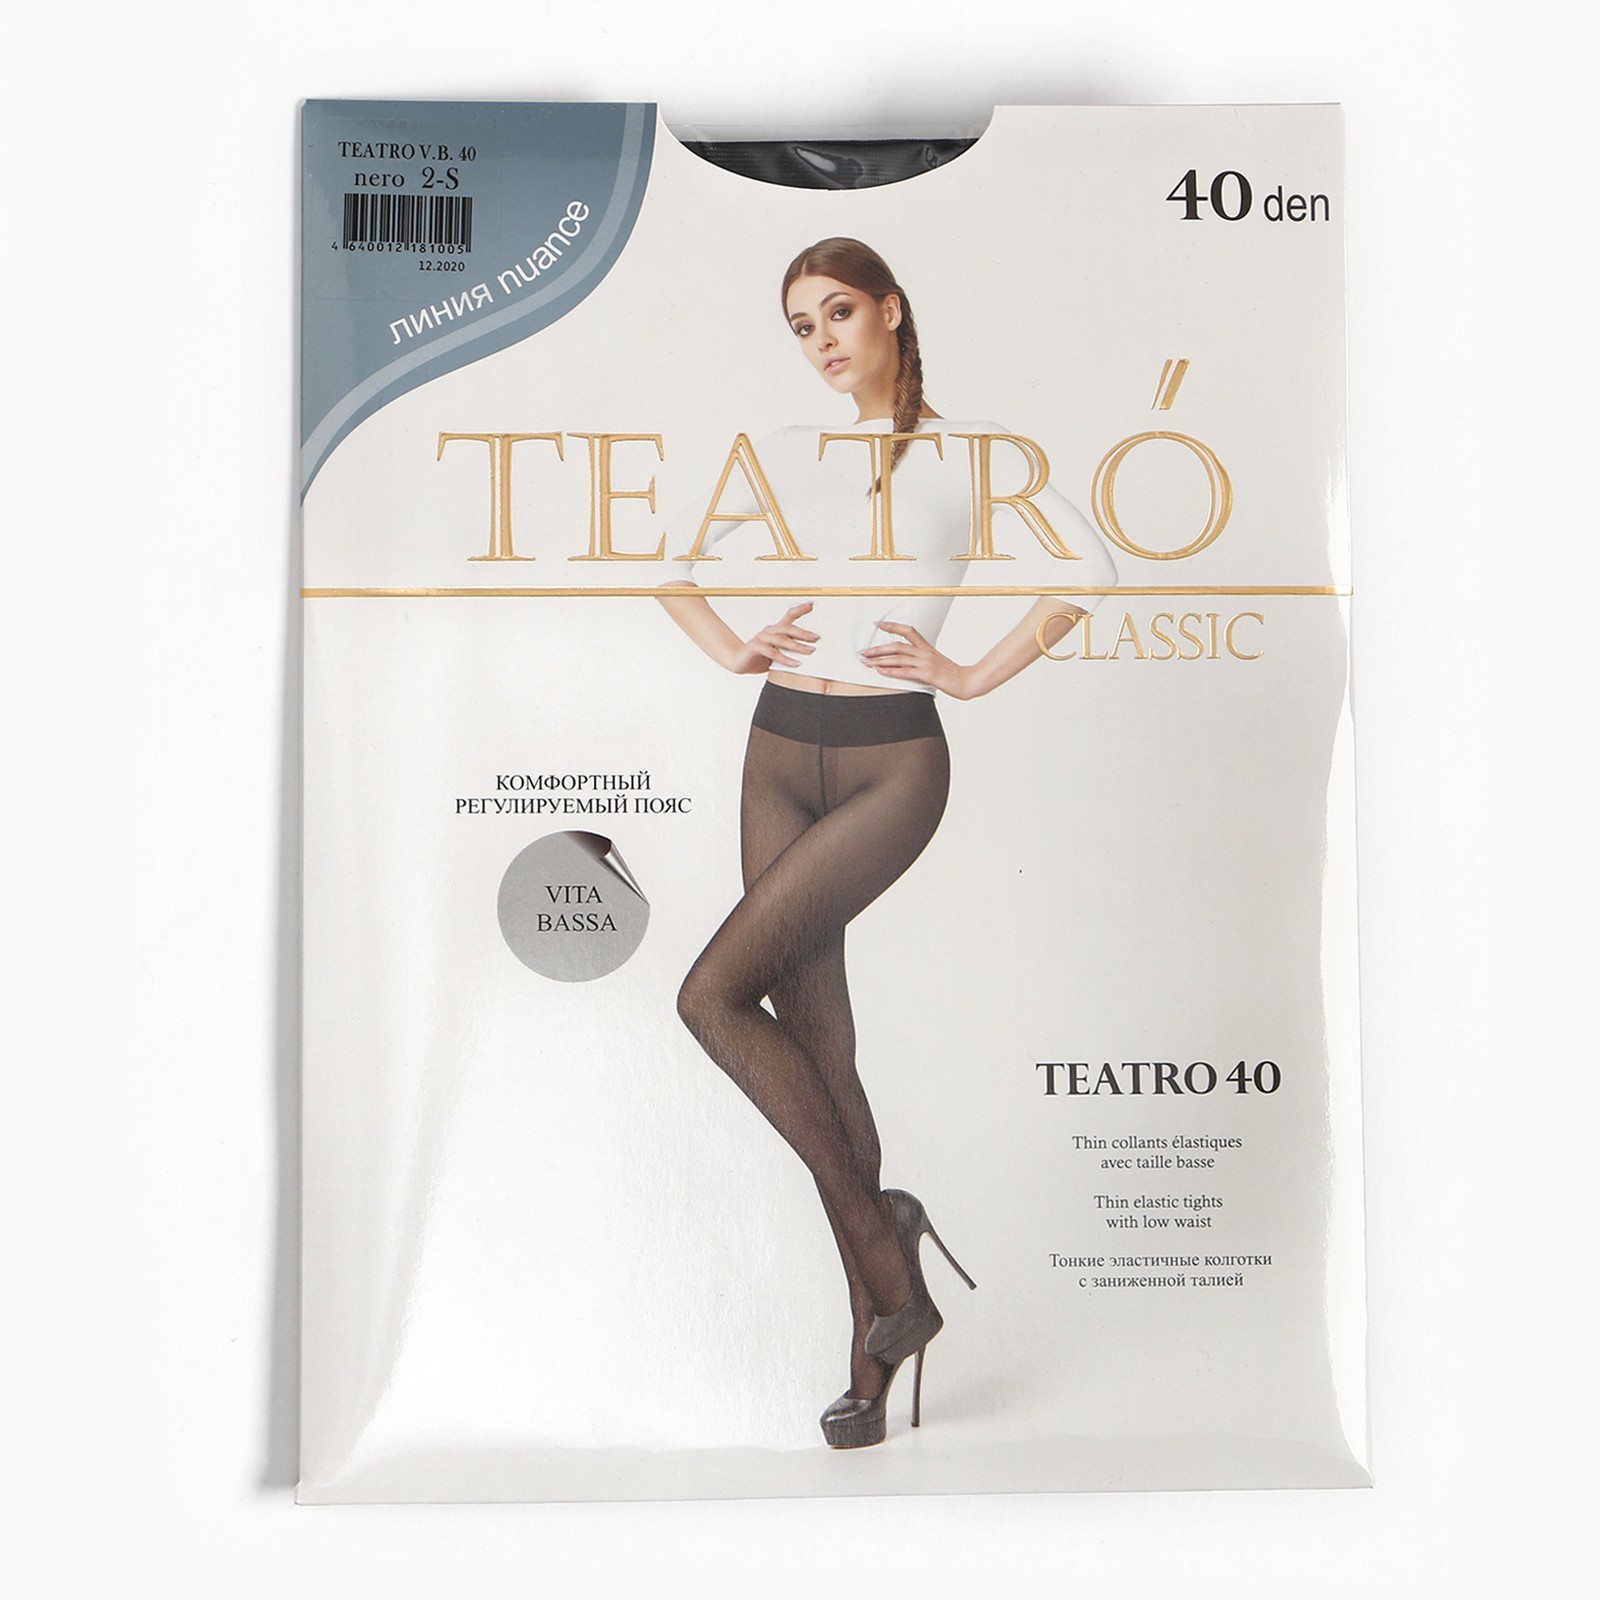 Колготки женские Teatro 40, цвет чёрный (nero), размер 4 (1638127) - Купить  по цене от 201.00 руб. | Интернет магазин SIMA-LAND.RU